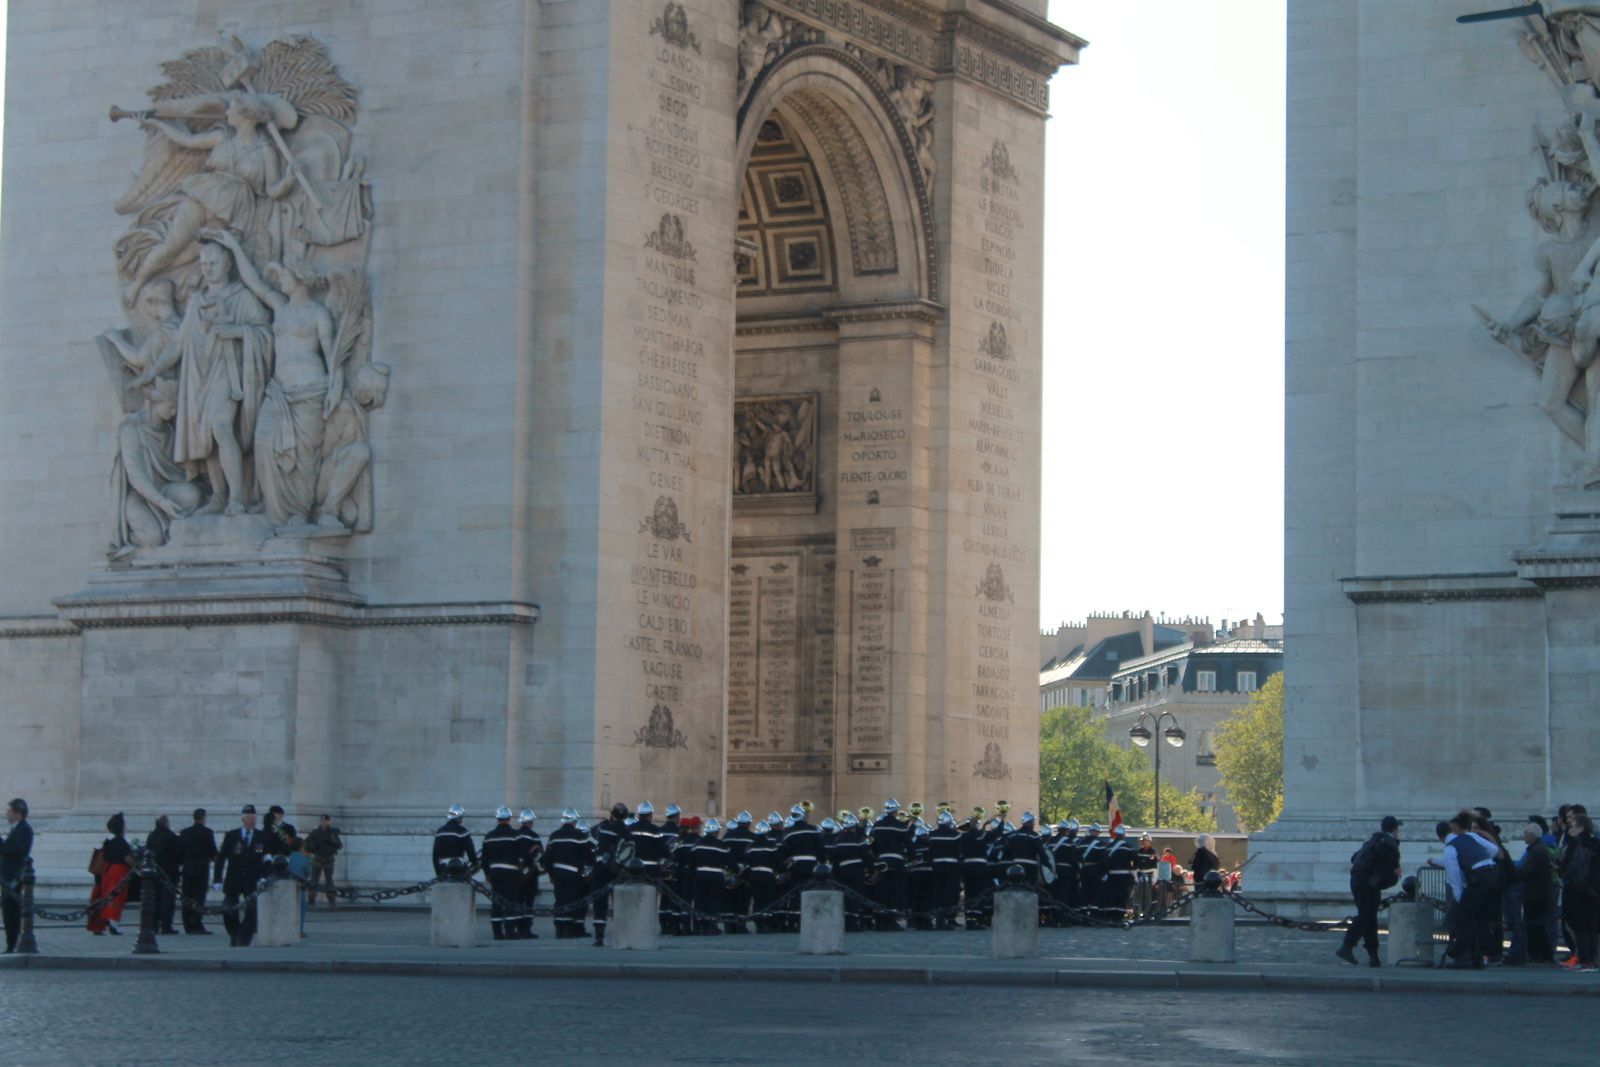 L’Arc de Triomphe - photos prises le 18 avril 2015